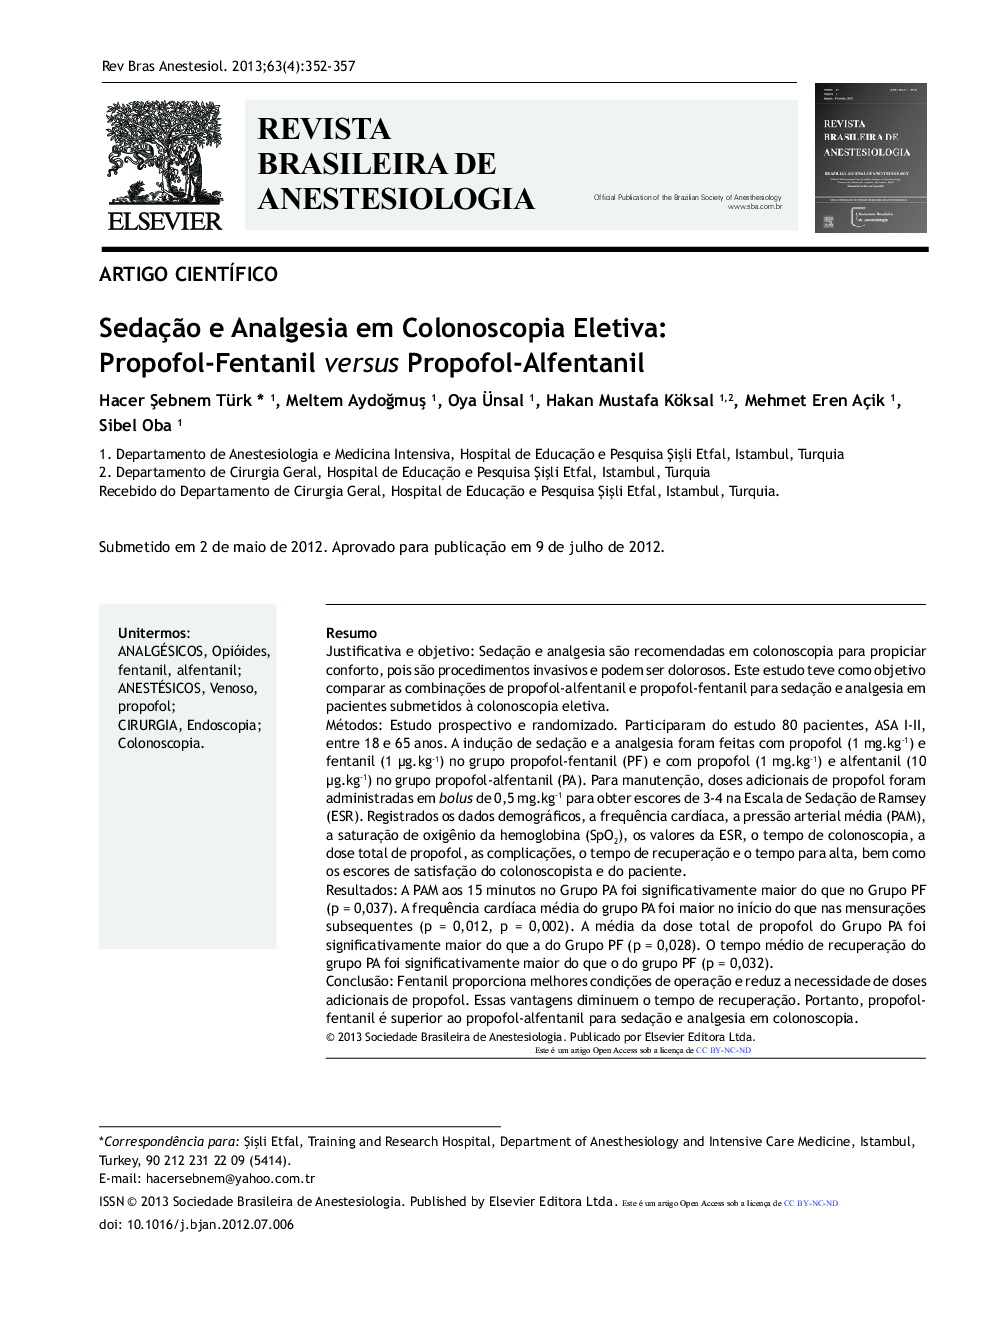 Sedação e Analgesia em Colonoscopia Eletiva: Propofol-Fentanil versus Propofol-Alfentanil 